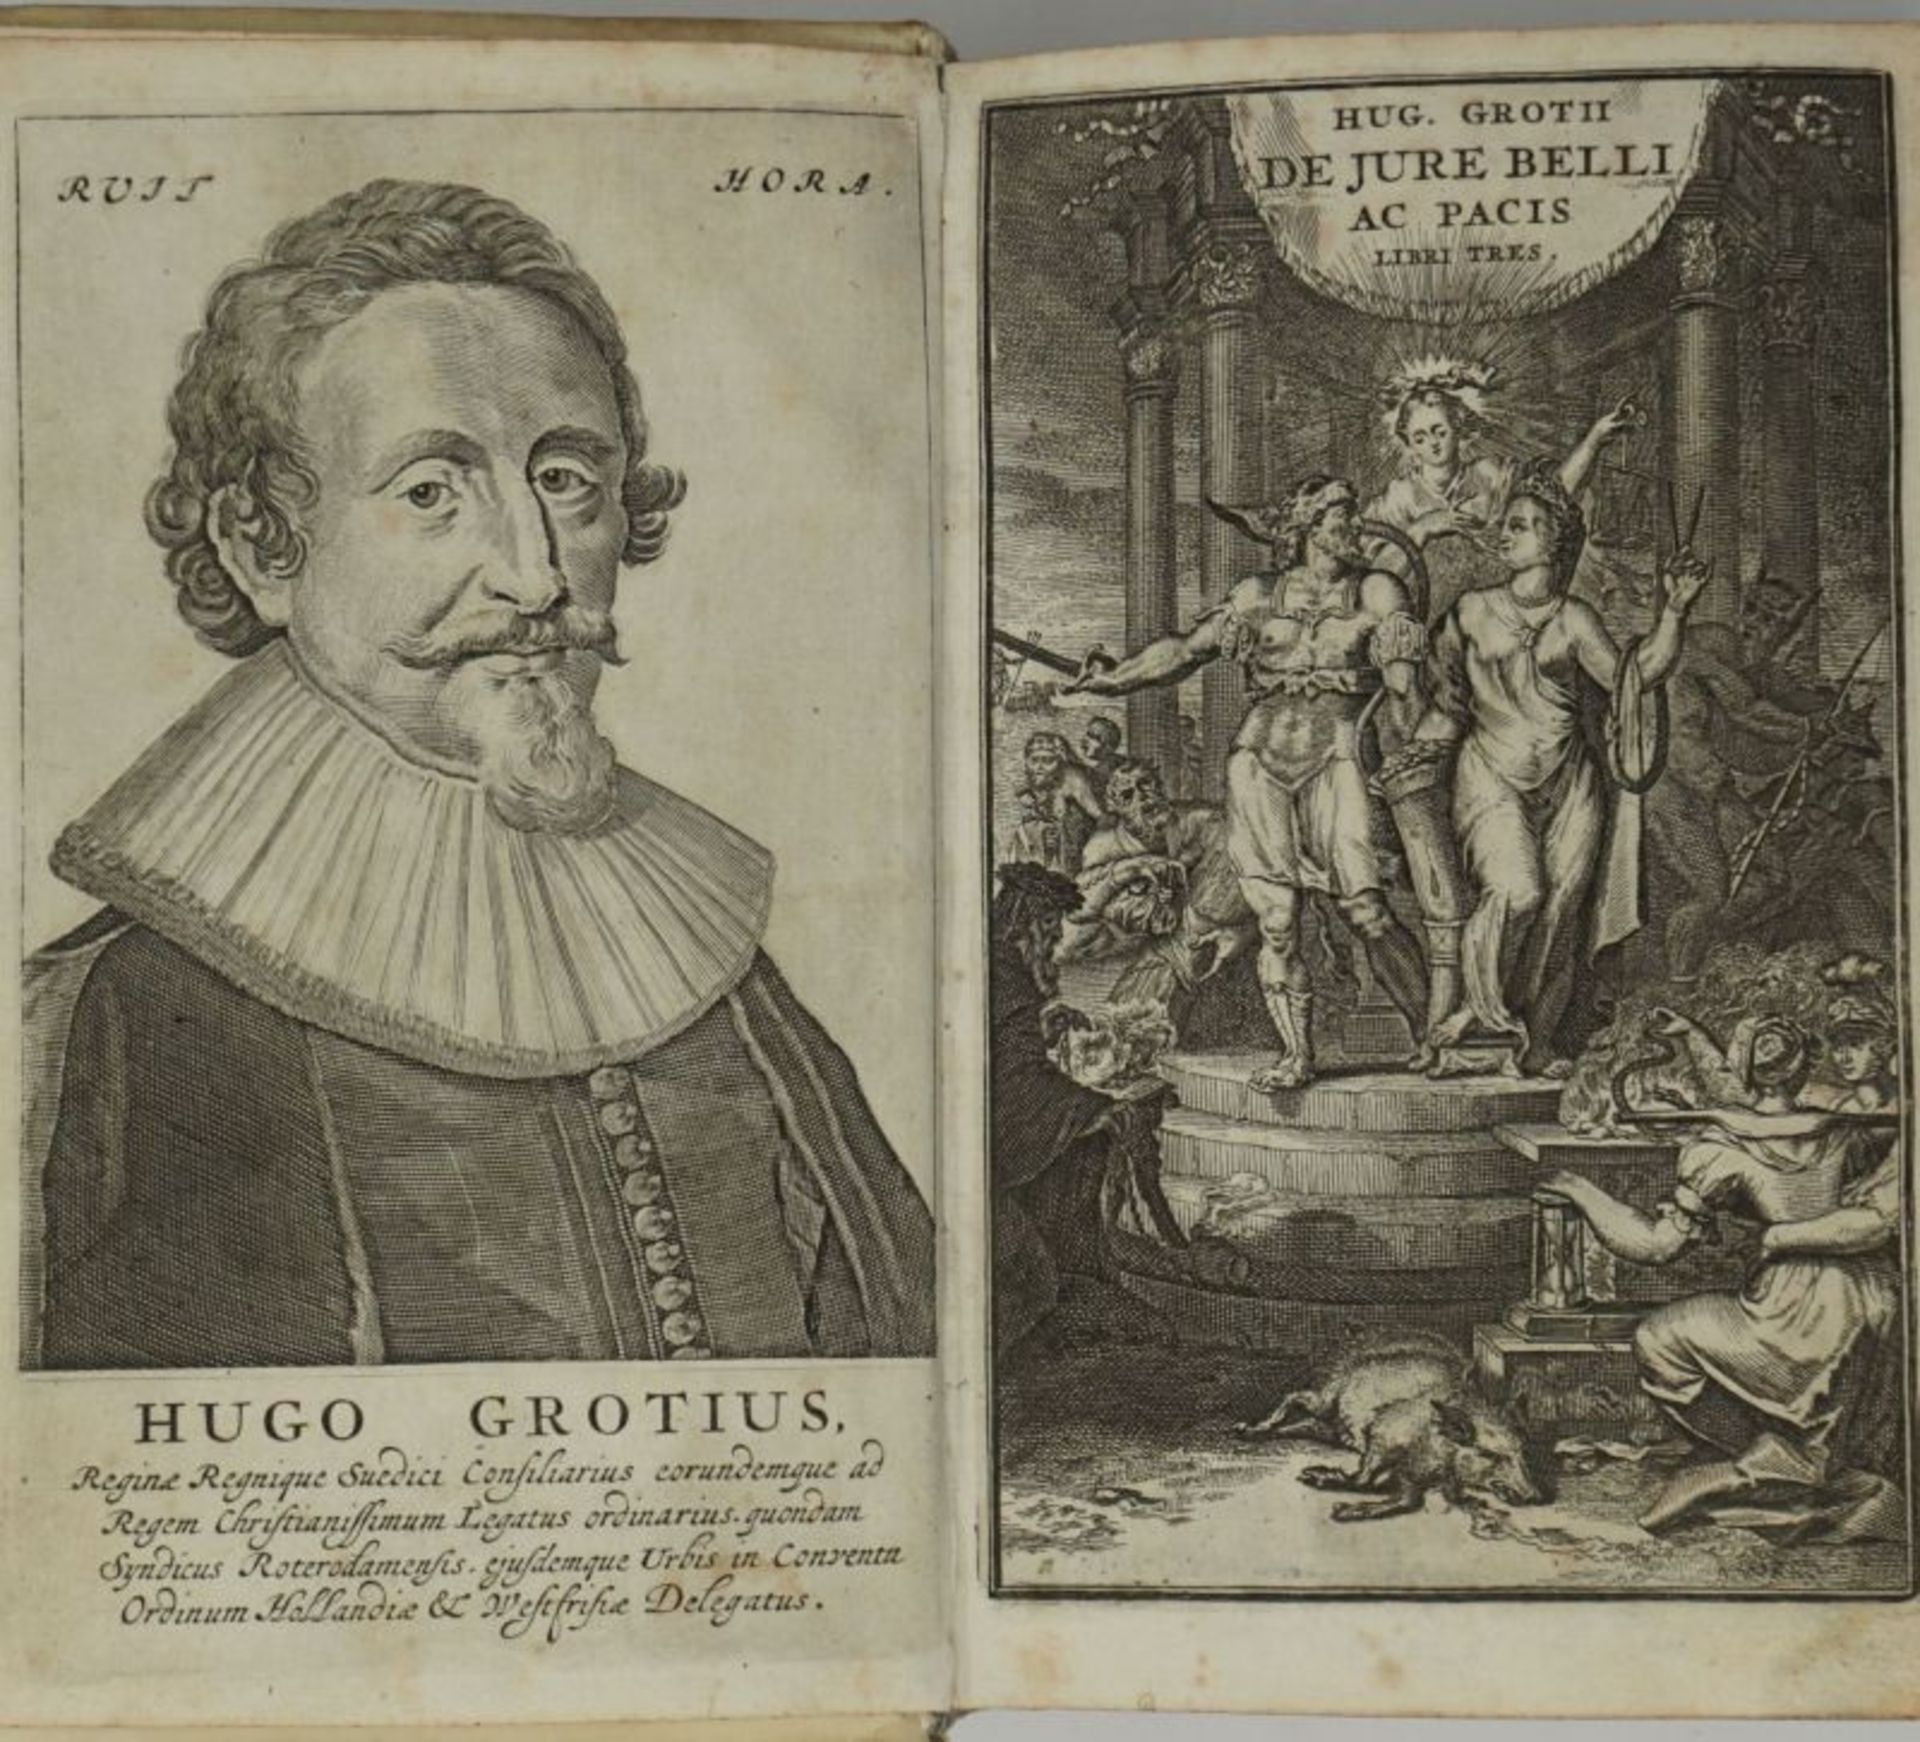 Grotius, Hugo: De jure belli ac pacis libri tres